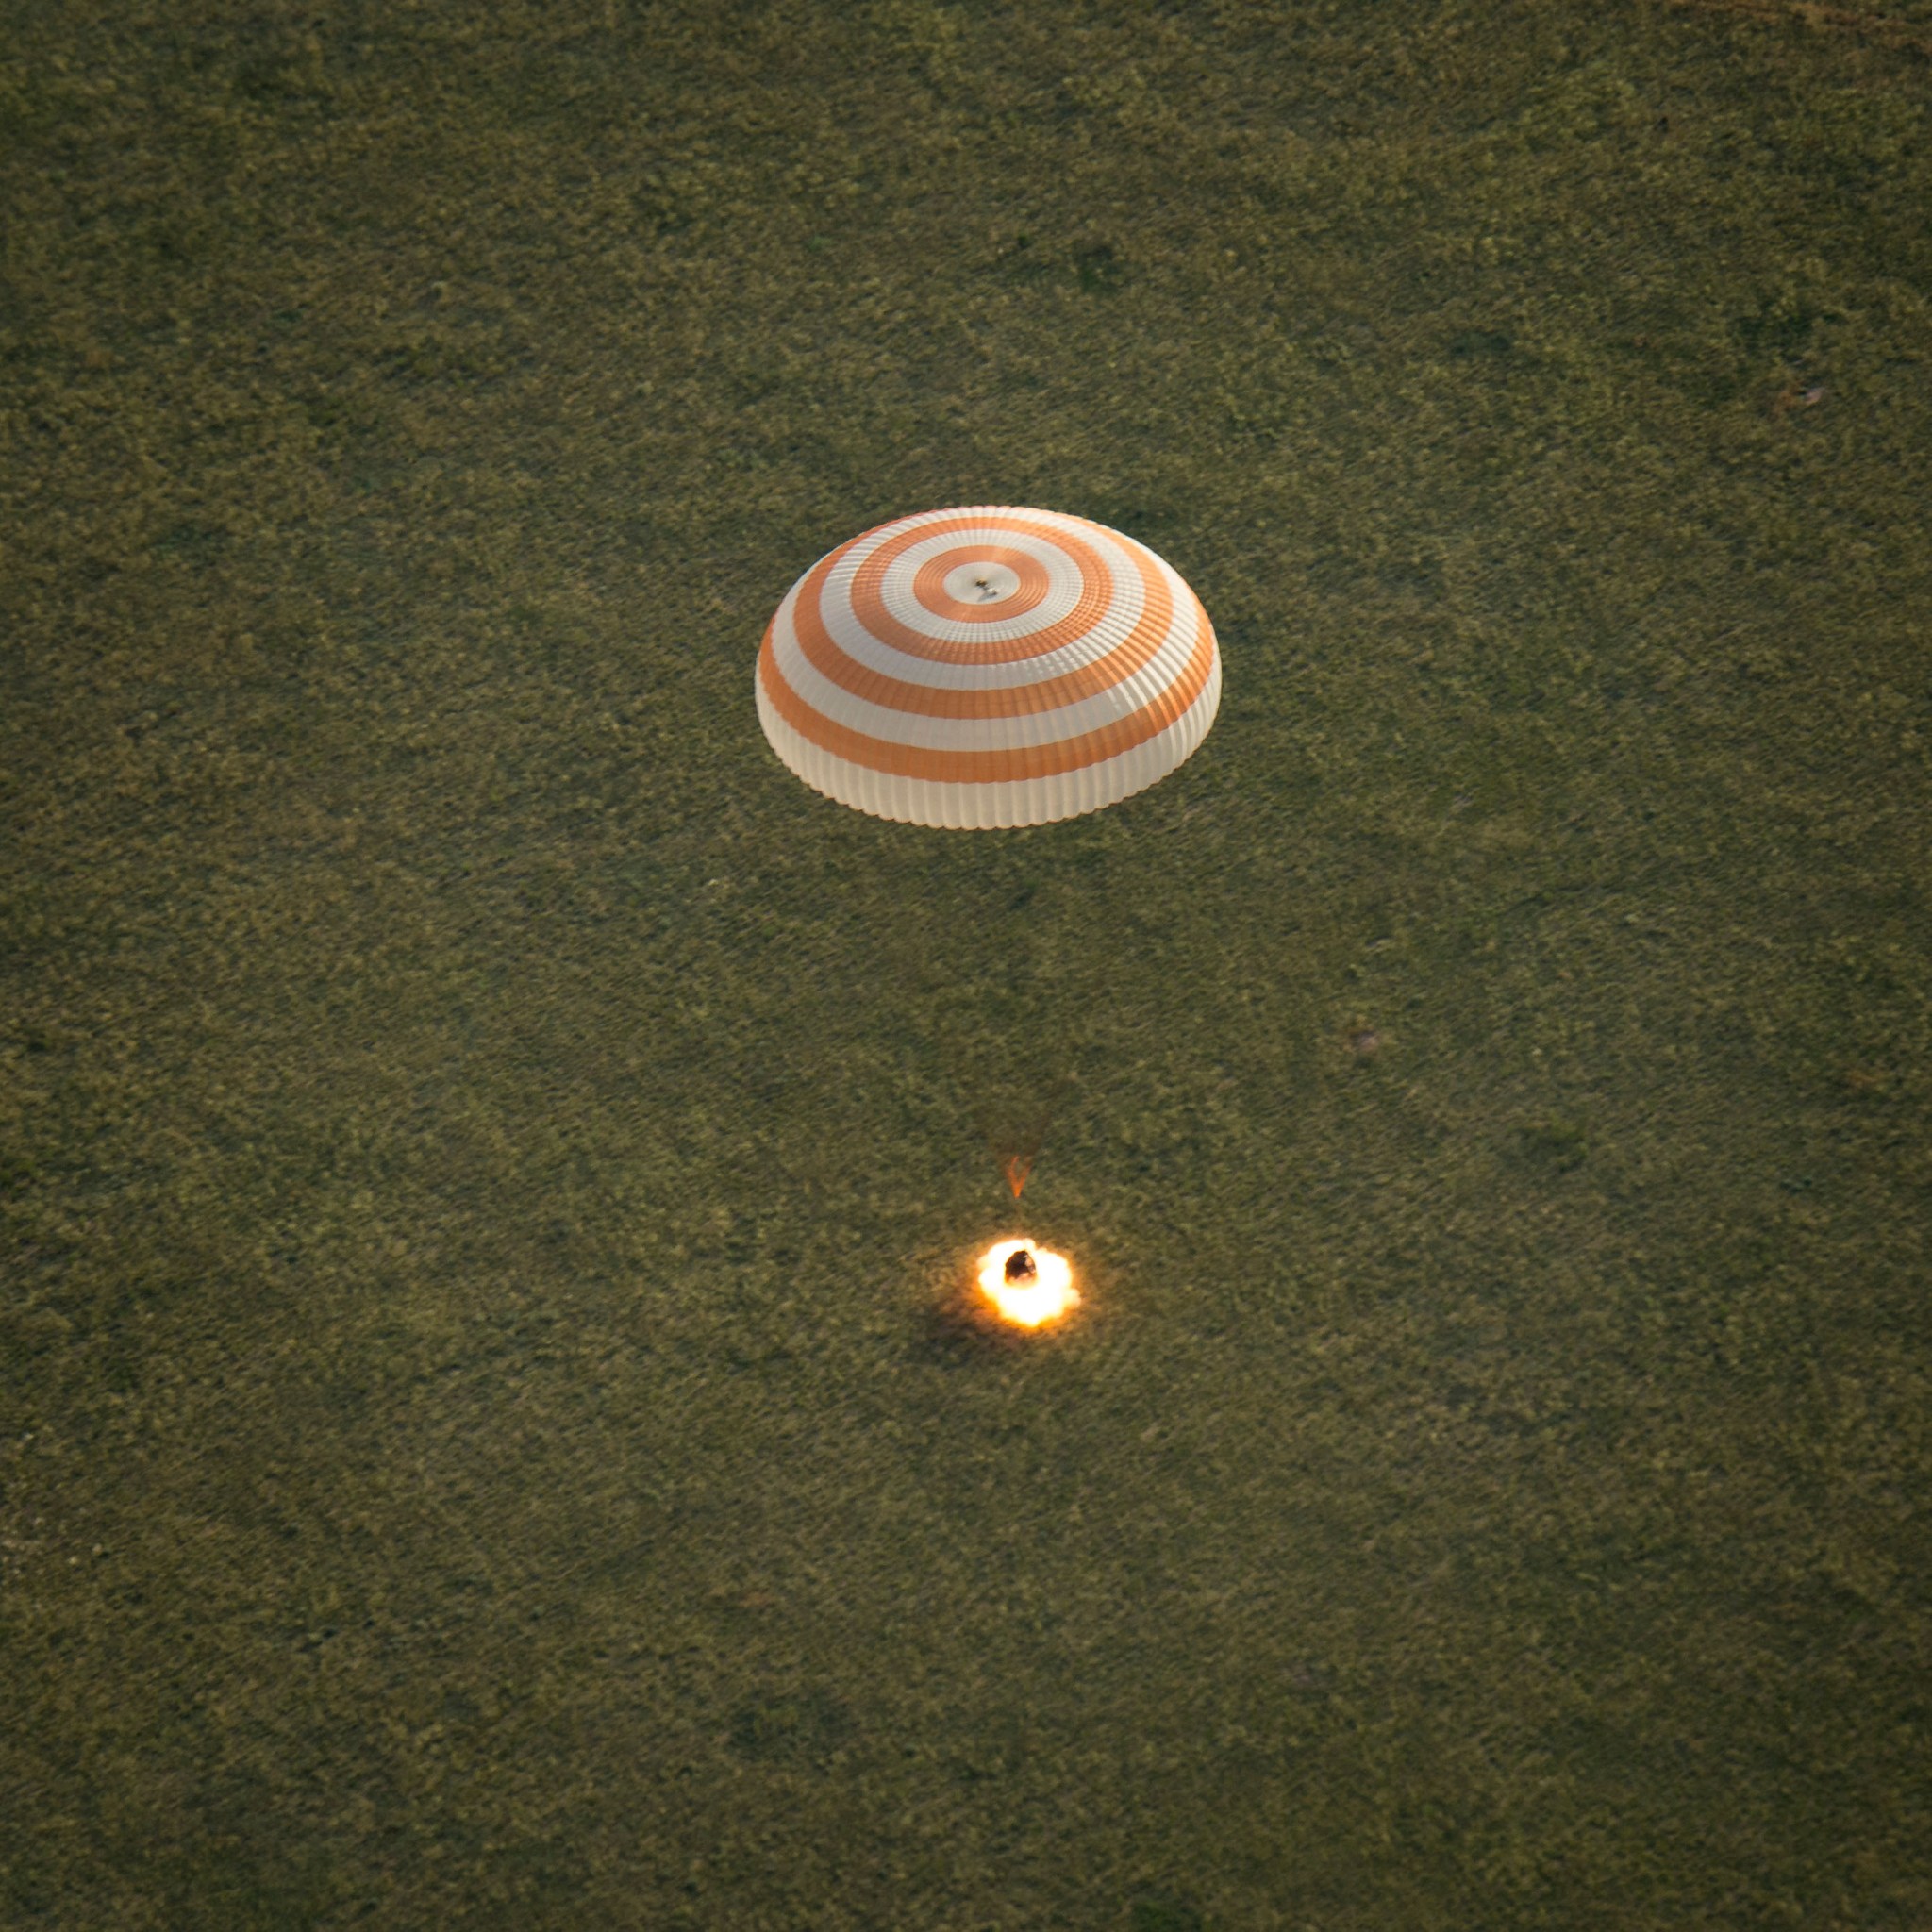 The Soyuz TMA-15M Spacecraft